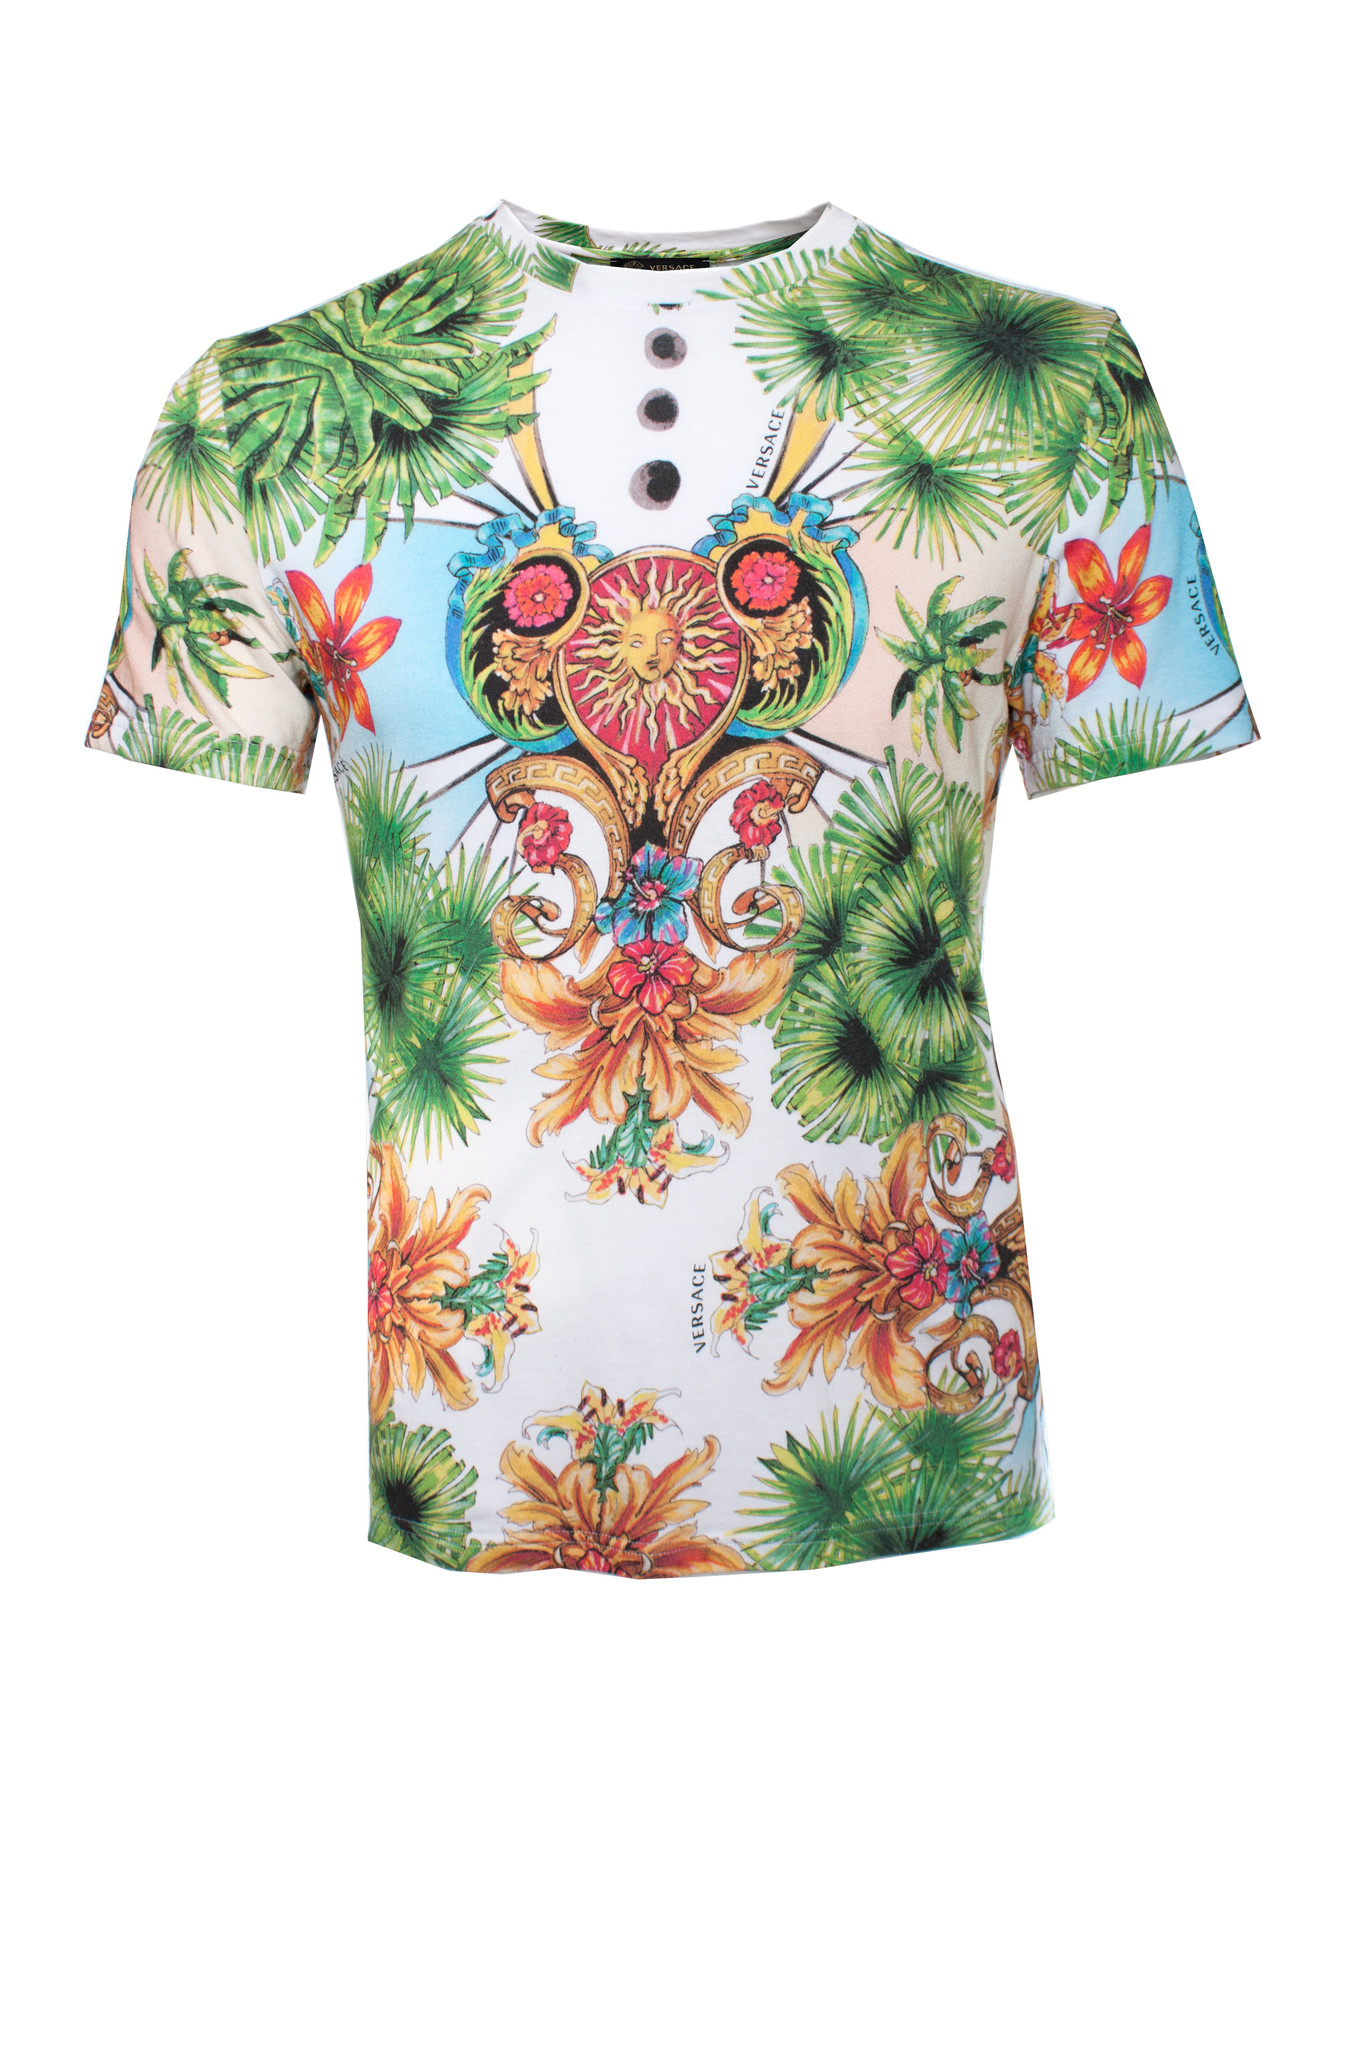 Versace beachwear, Tropical T-shirt - Unique Designer Pieces